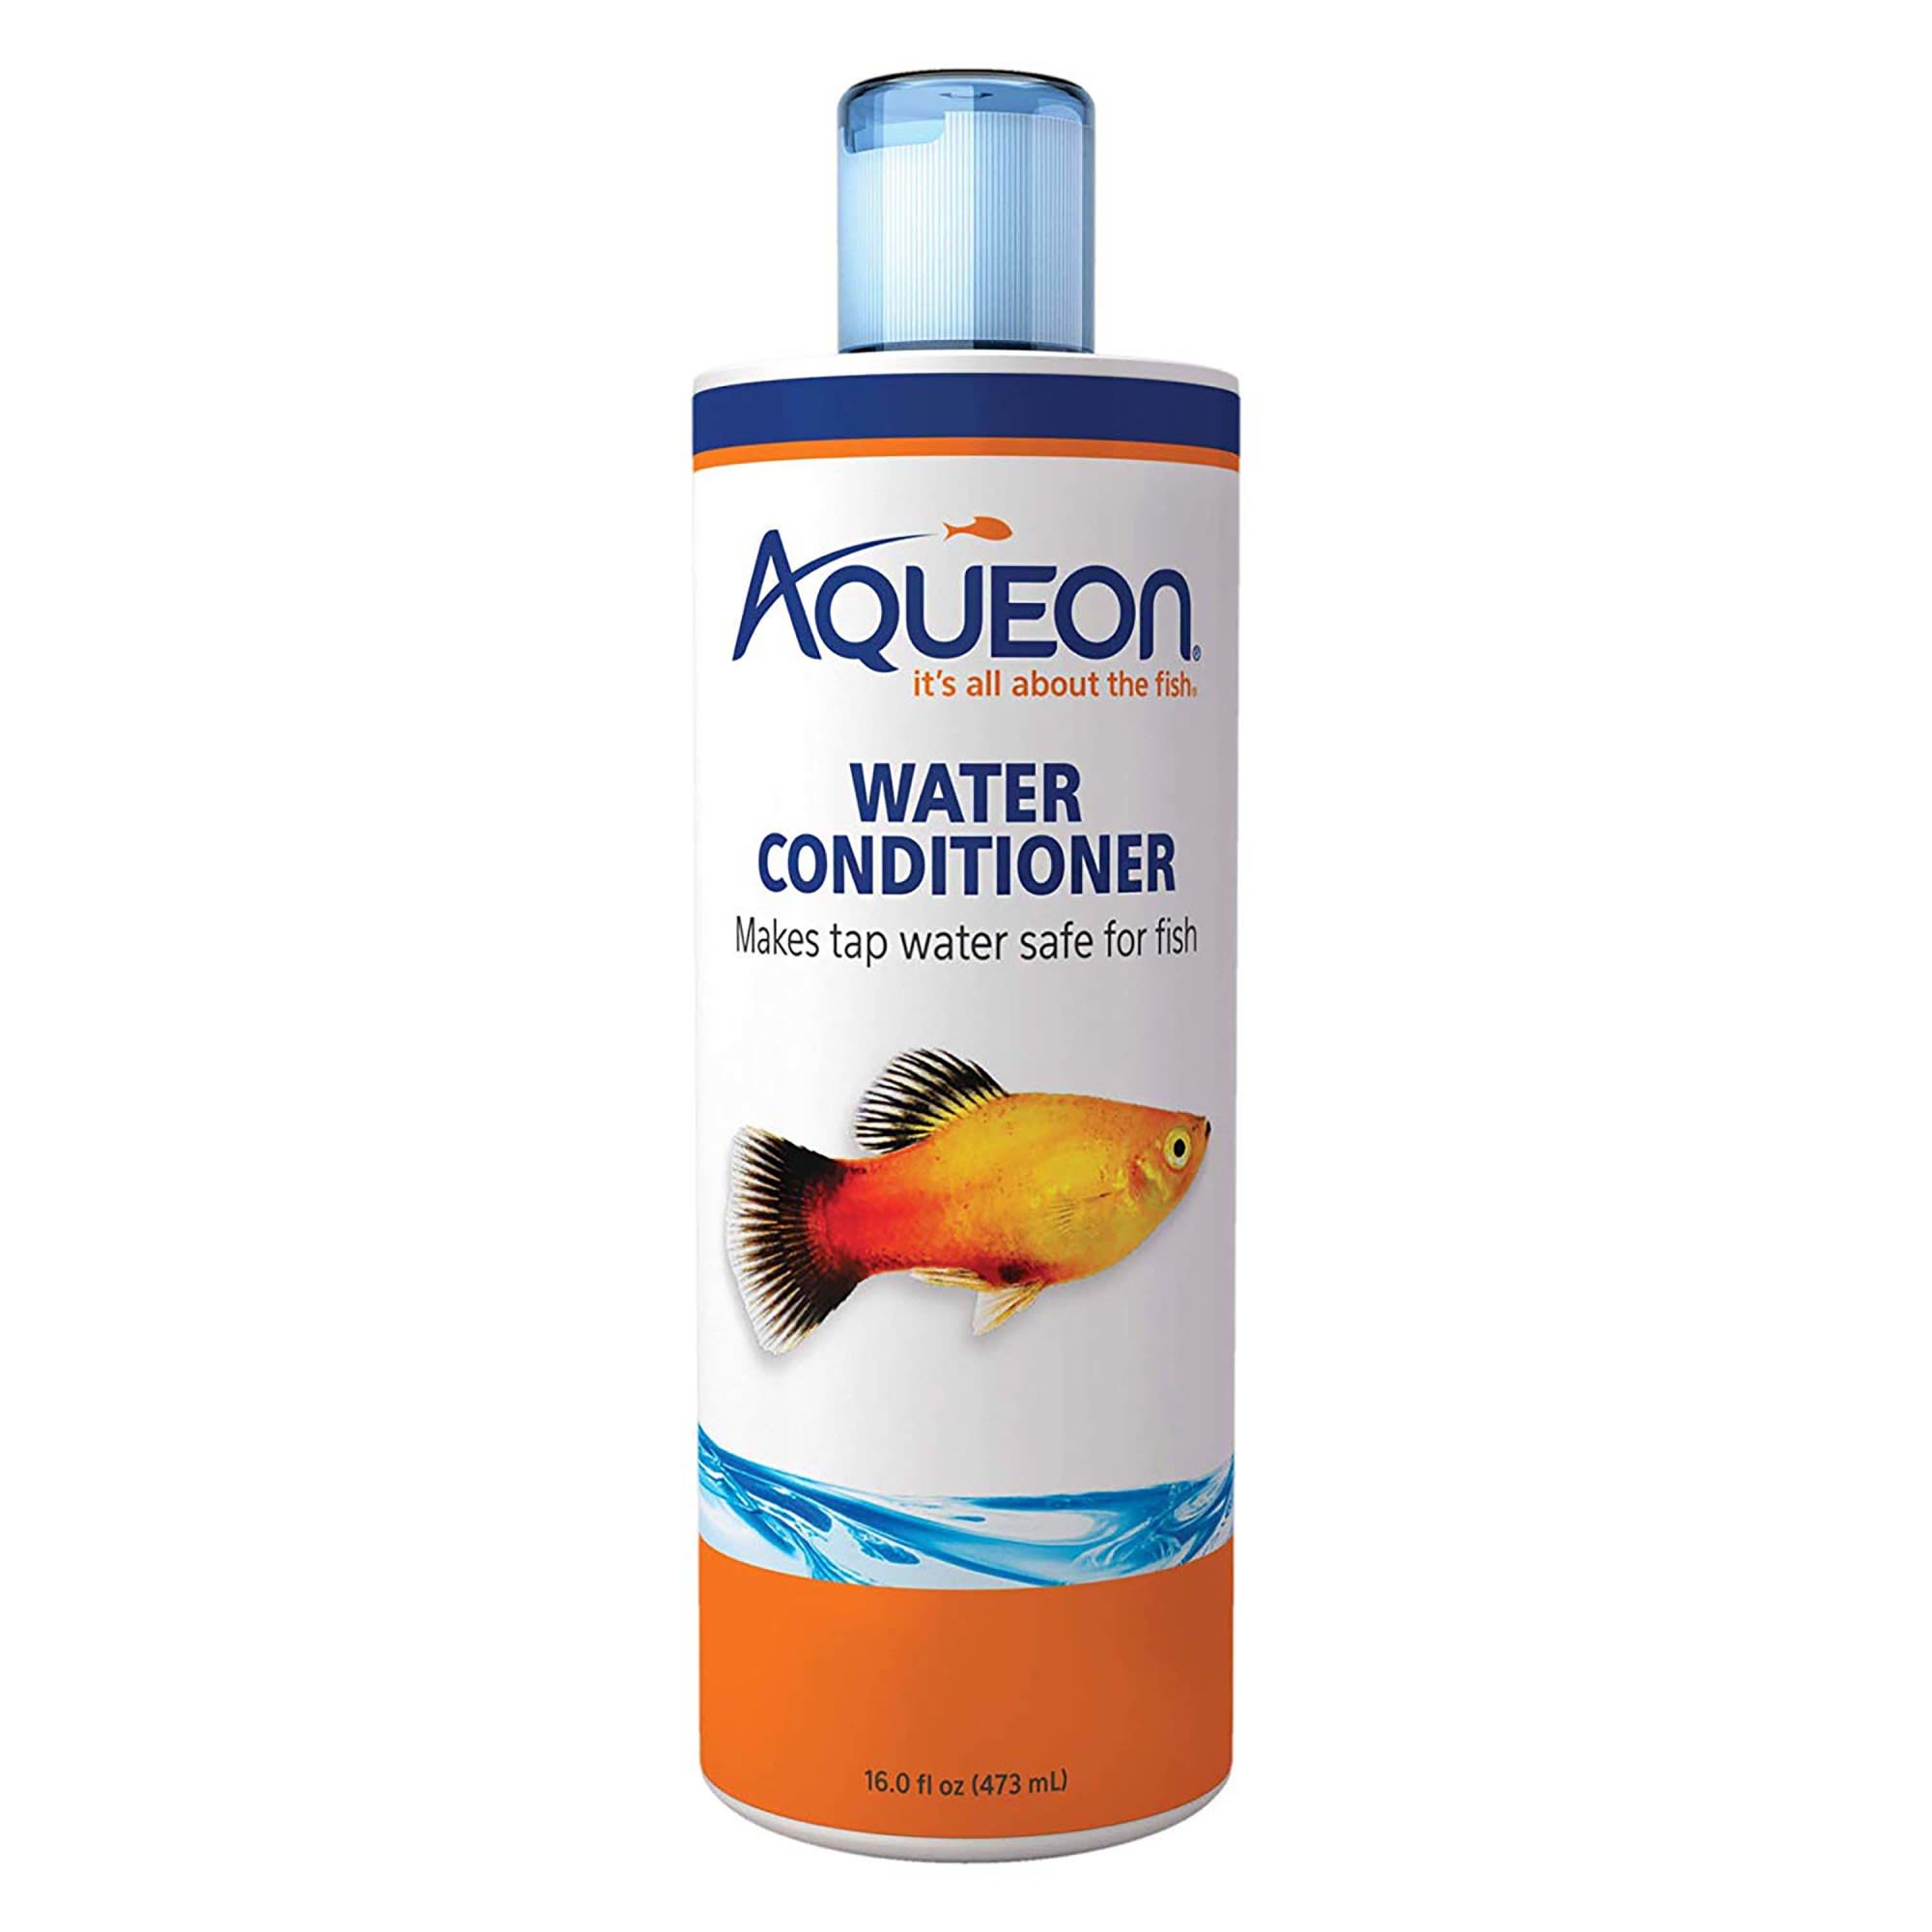 Photos - Aquarium Lighting Aqueon Water Conditioner, 16 oz., 16 FZ 100106005 